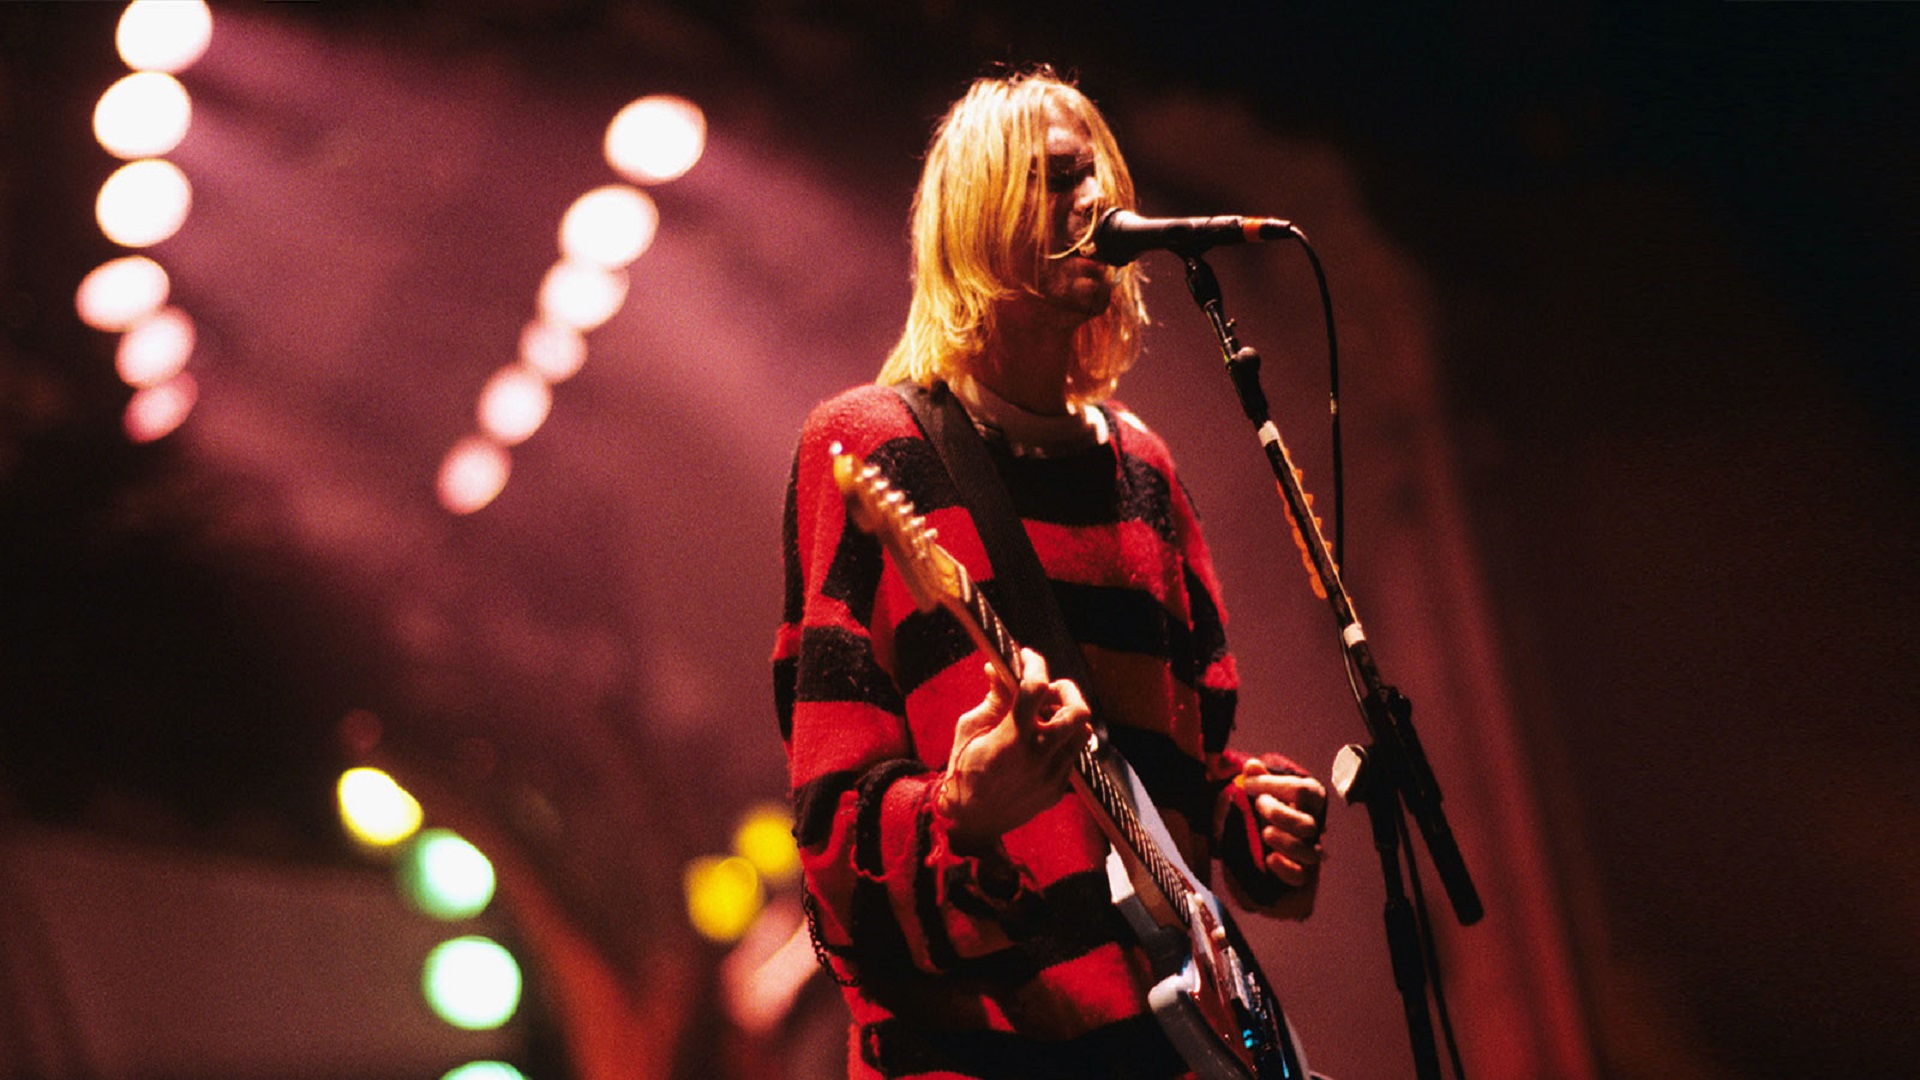 30 años de incertidumbre: el misterio en torno a la muerte de Kurt Cobain